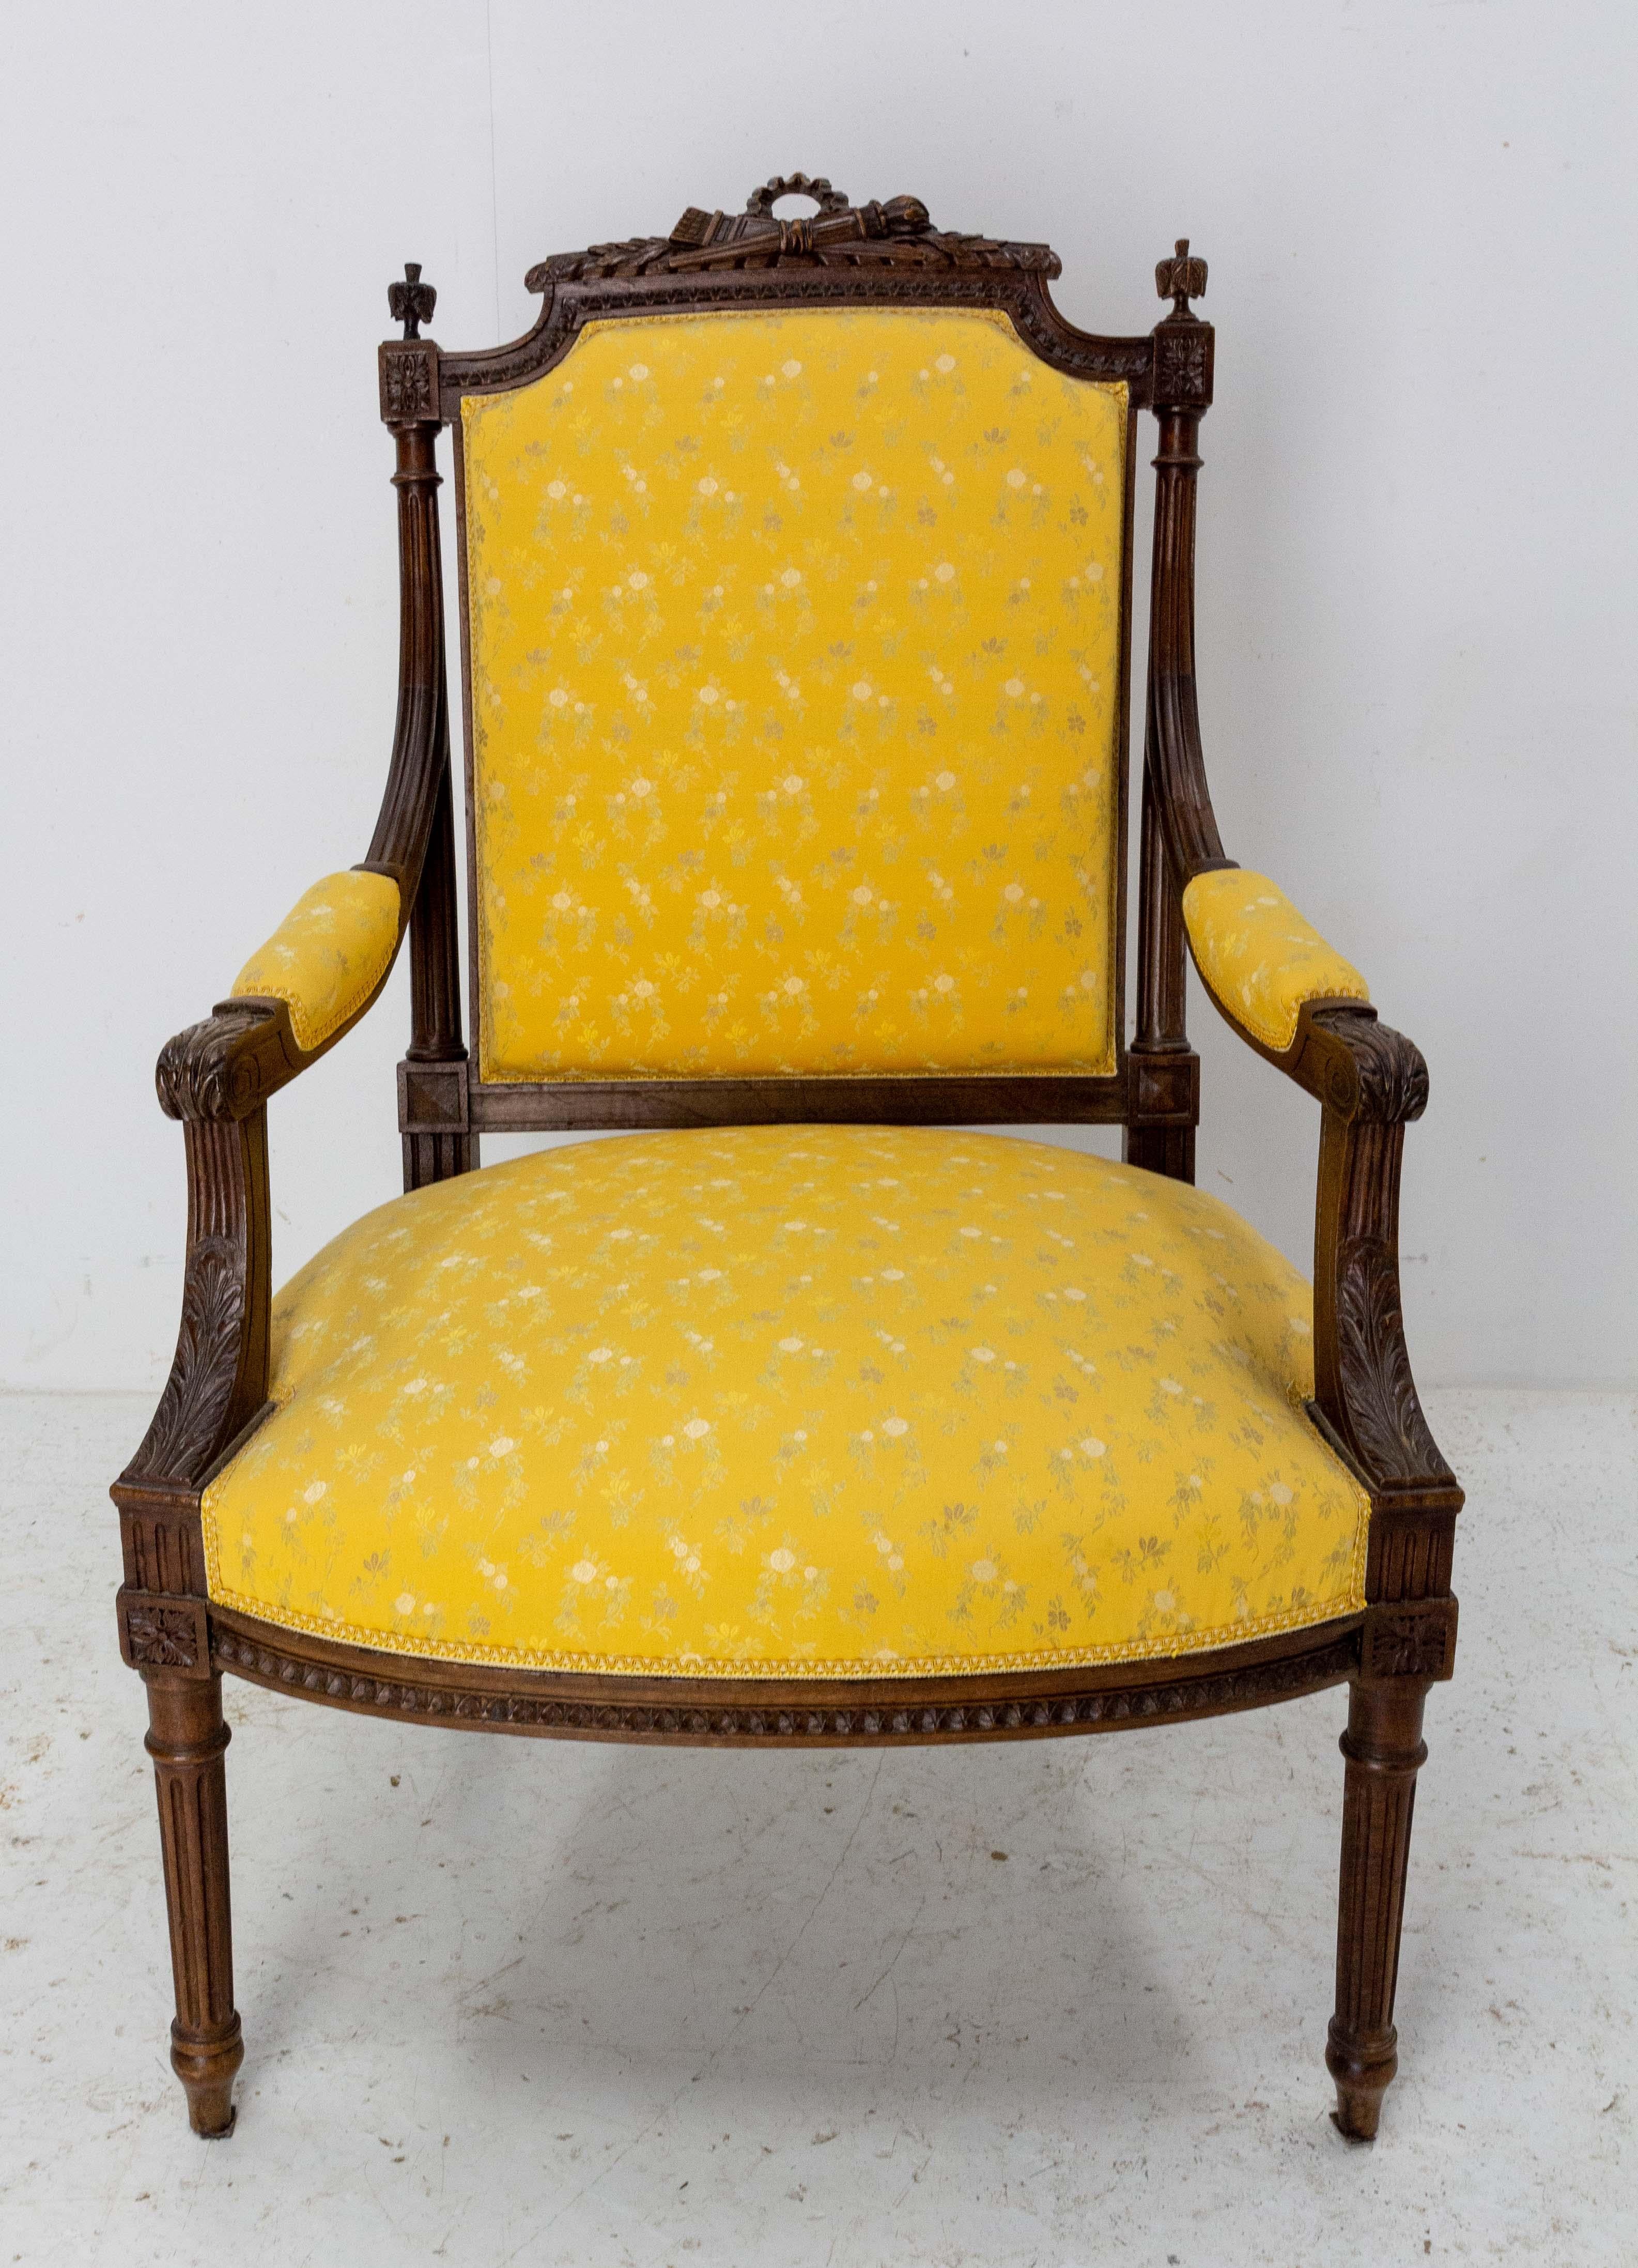 Französisch fauteuil, offene Sessel Seite oder Schreibtisch Stuhl Louis XVI Wiederbelebung, 
um 1880
Die Polsterung und der Stoff sind vor kurzem erneuert worden
Guter Zustand
Walnussholzrahmen gesund und solide.

Versand:
L66 P69 H102 11,4